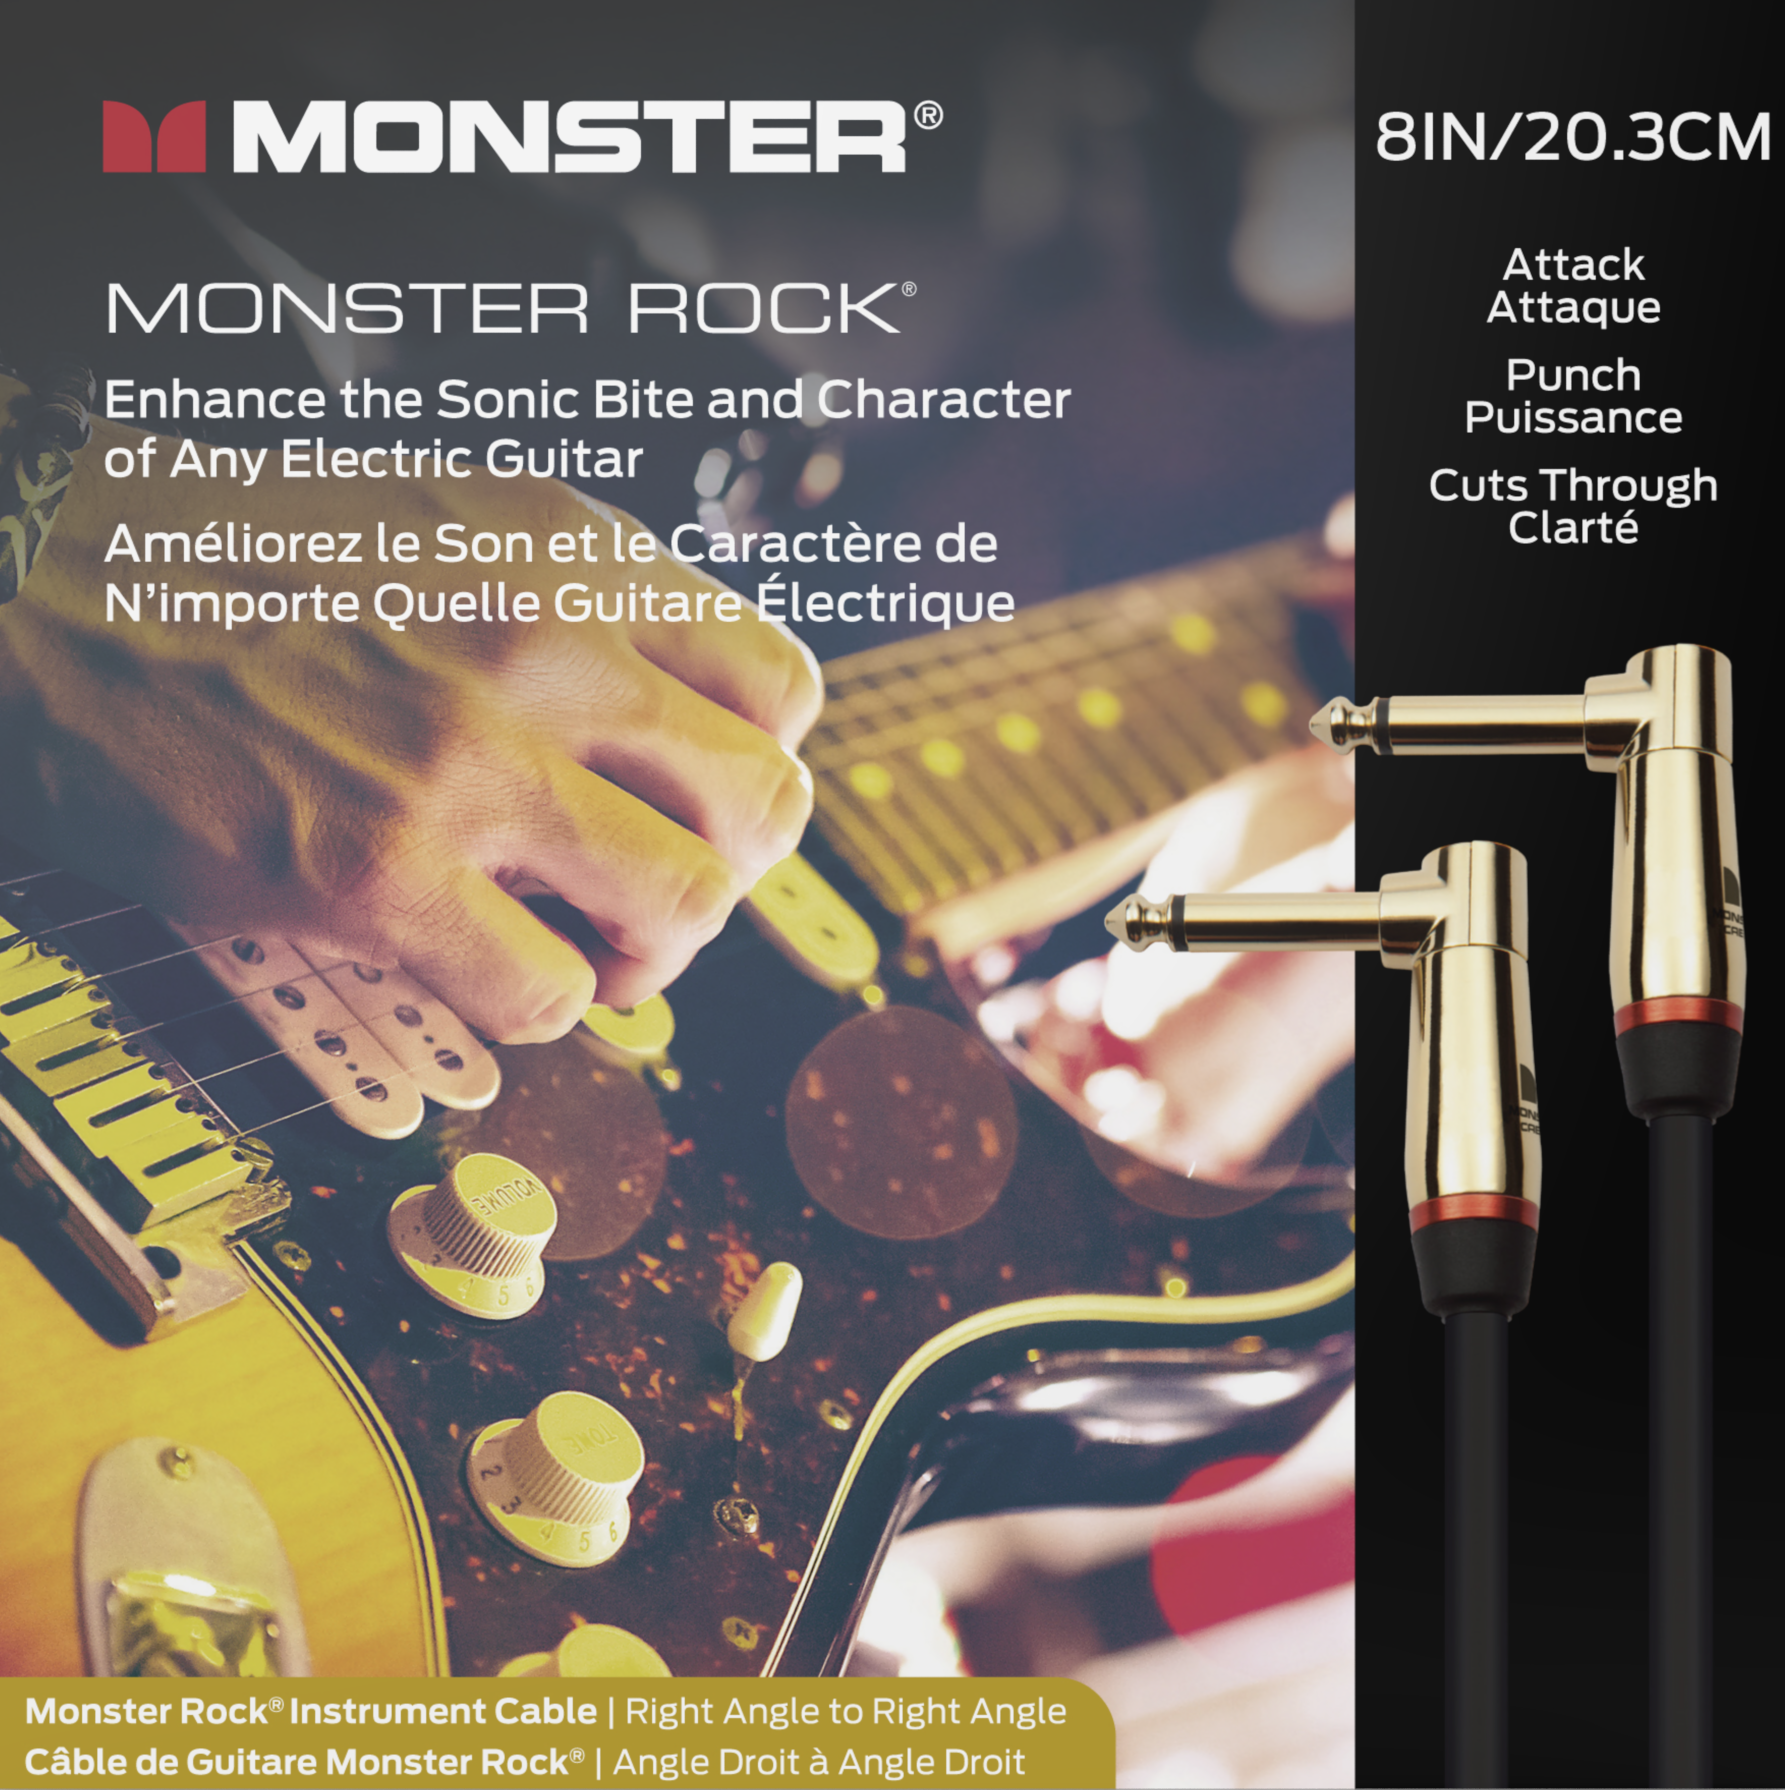 Monster® Prolink Rock Instrument Cable - HIENDGUITAR 8in(20.3cm) / Angle-Angle 8in(20.3cm) Monstercable Cable